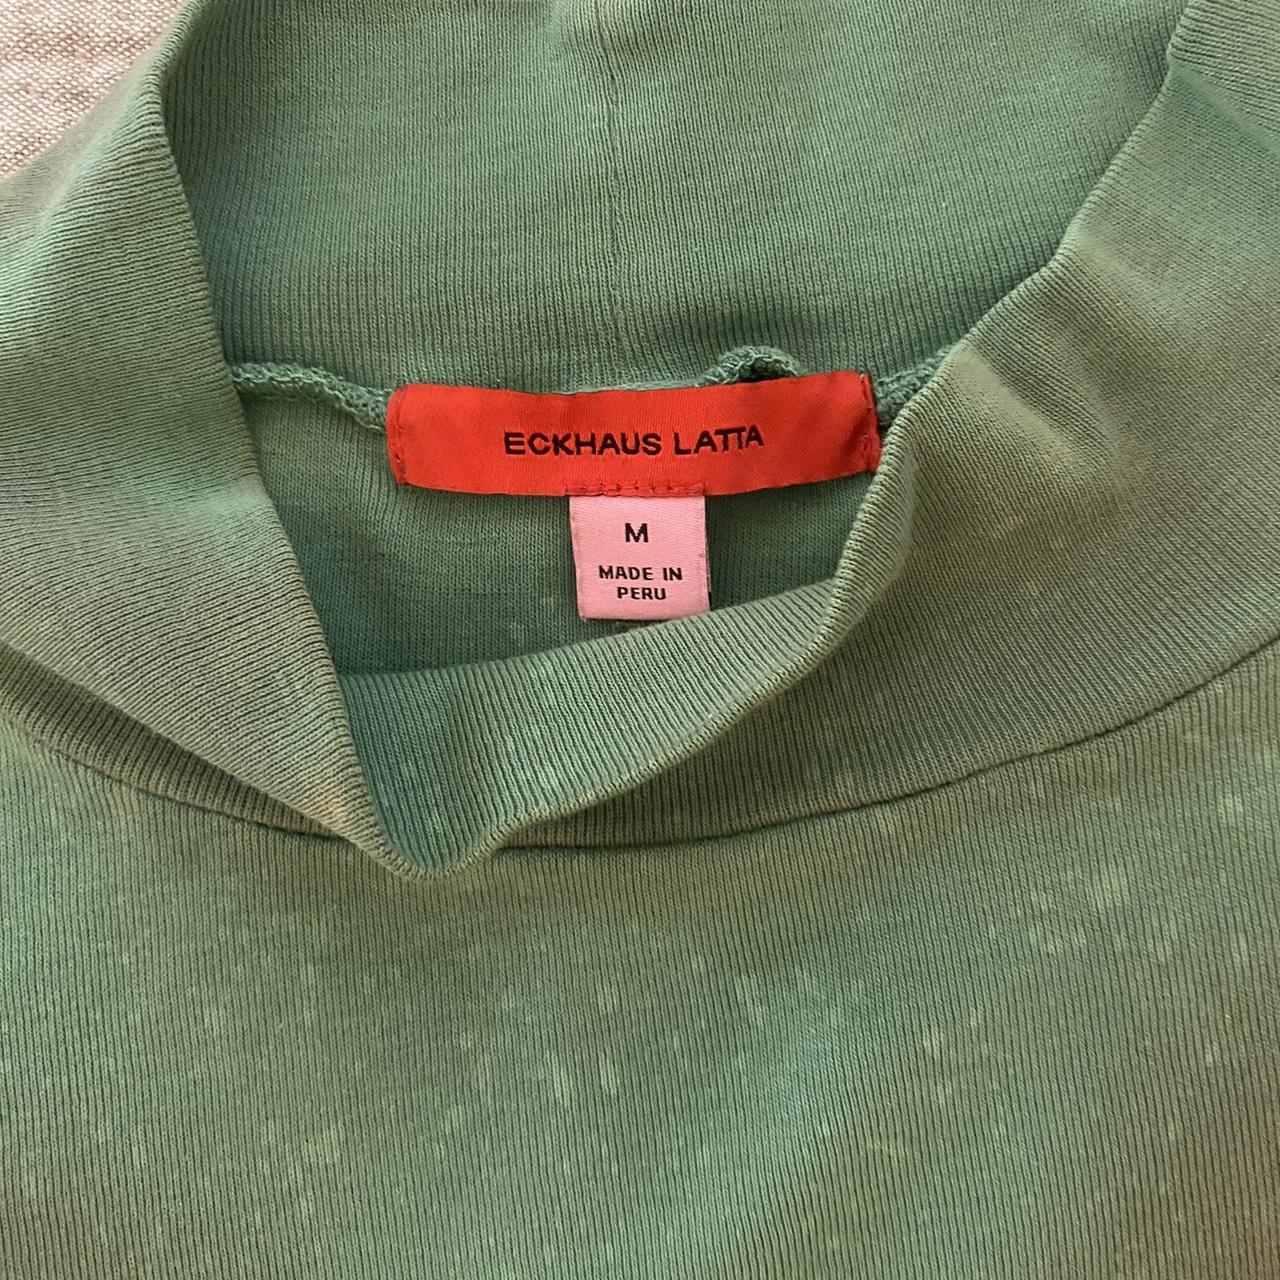 Eckhaus Latta Women's Green and Grey T-shirt (4)